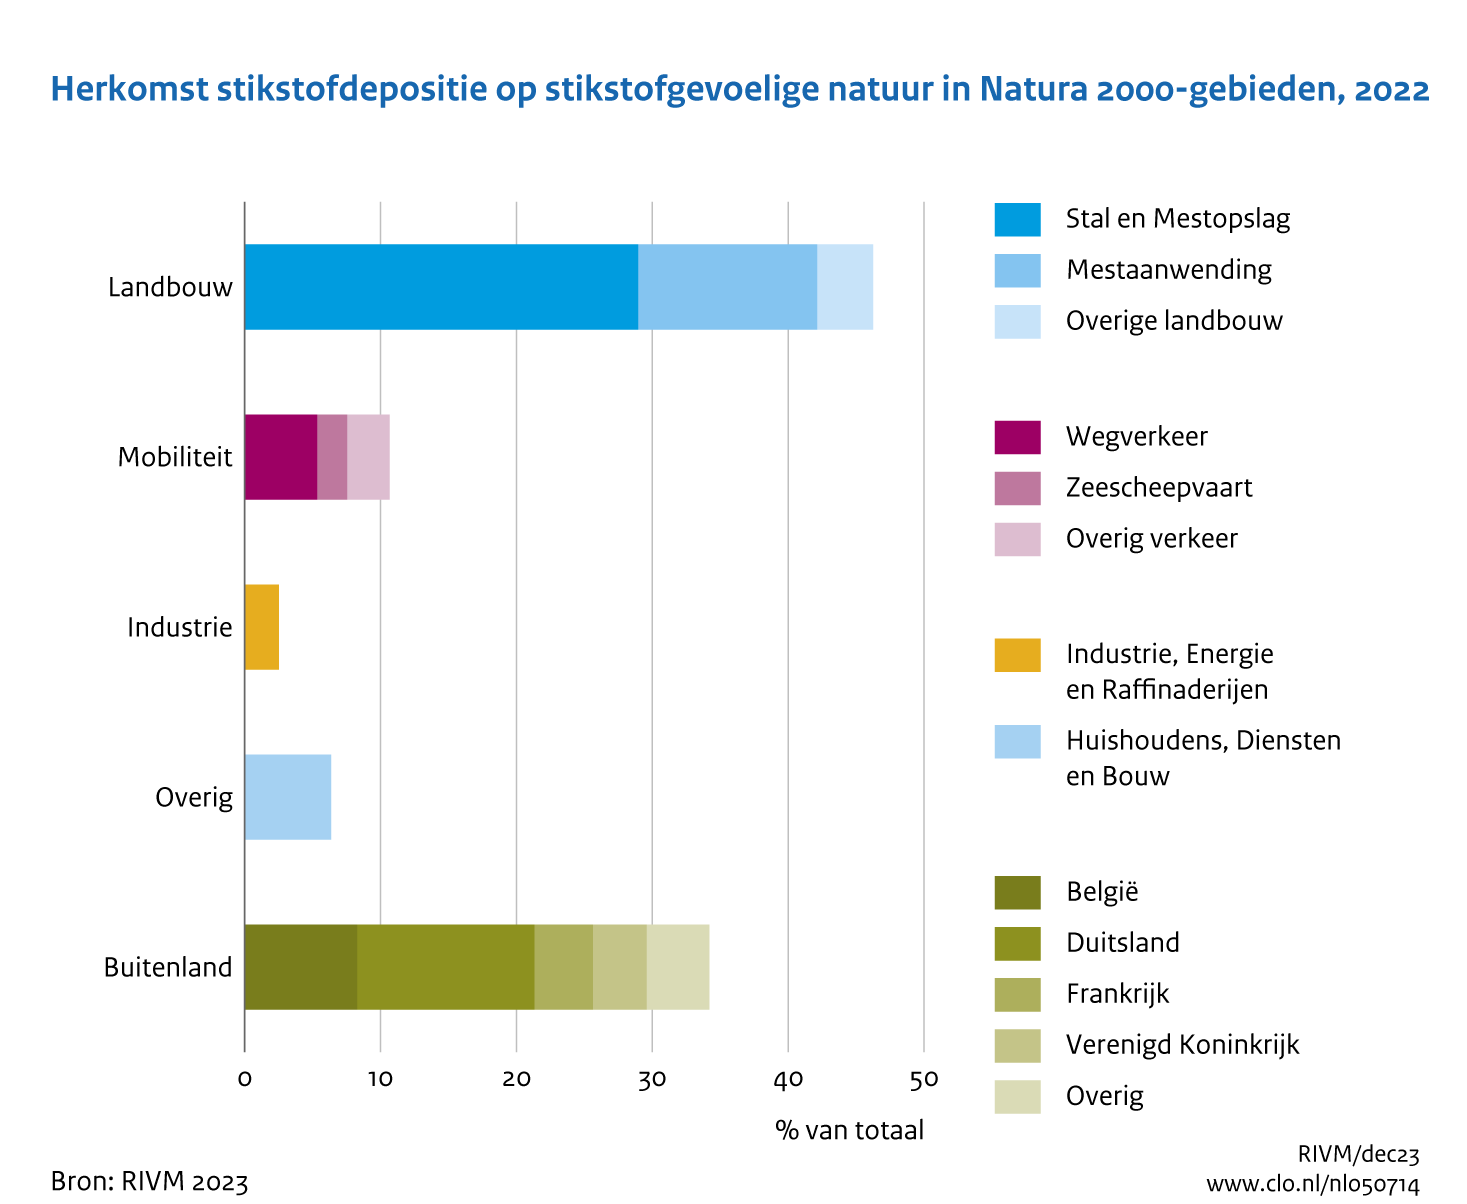 Het grootste deel van de depositie op stikstofgevoelige natuur is afkomstig van de Nederlandse landbouw. Andere binnenlandse bijdragen zijn wegverkeer en huishoudens, diensten en bouw. Daarnaast komt 34% van de depositie uit het buitenland.